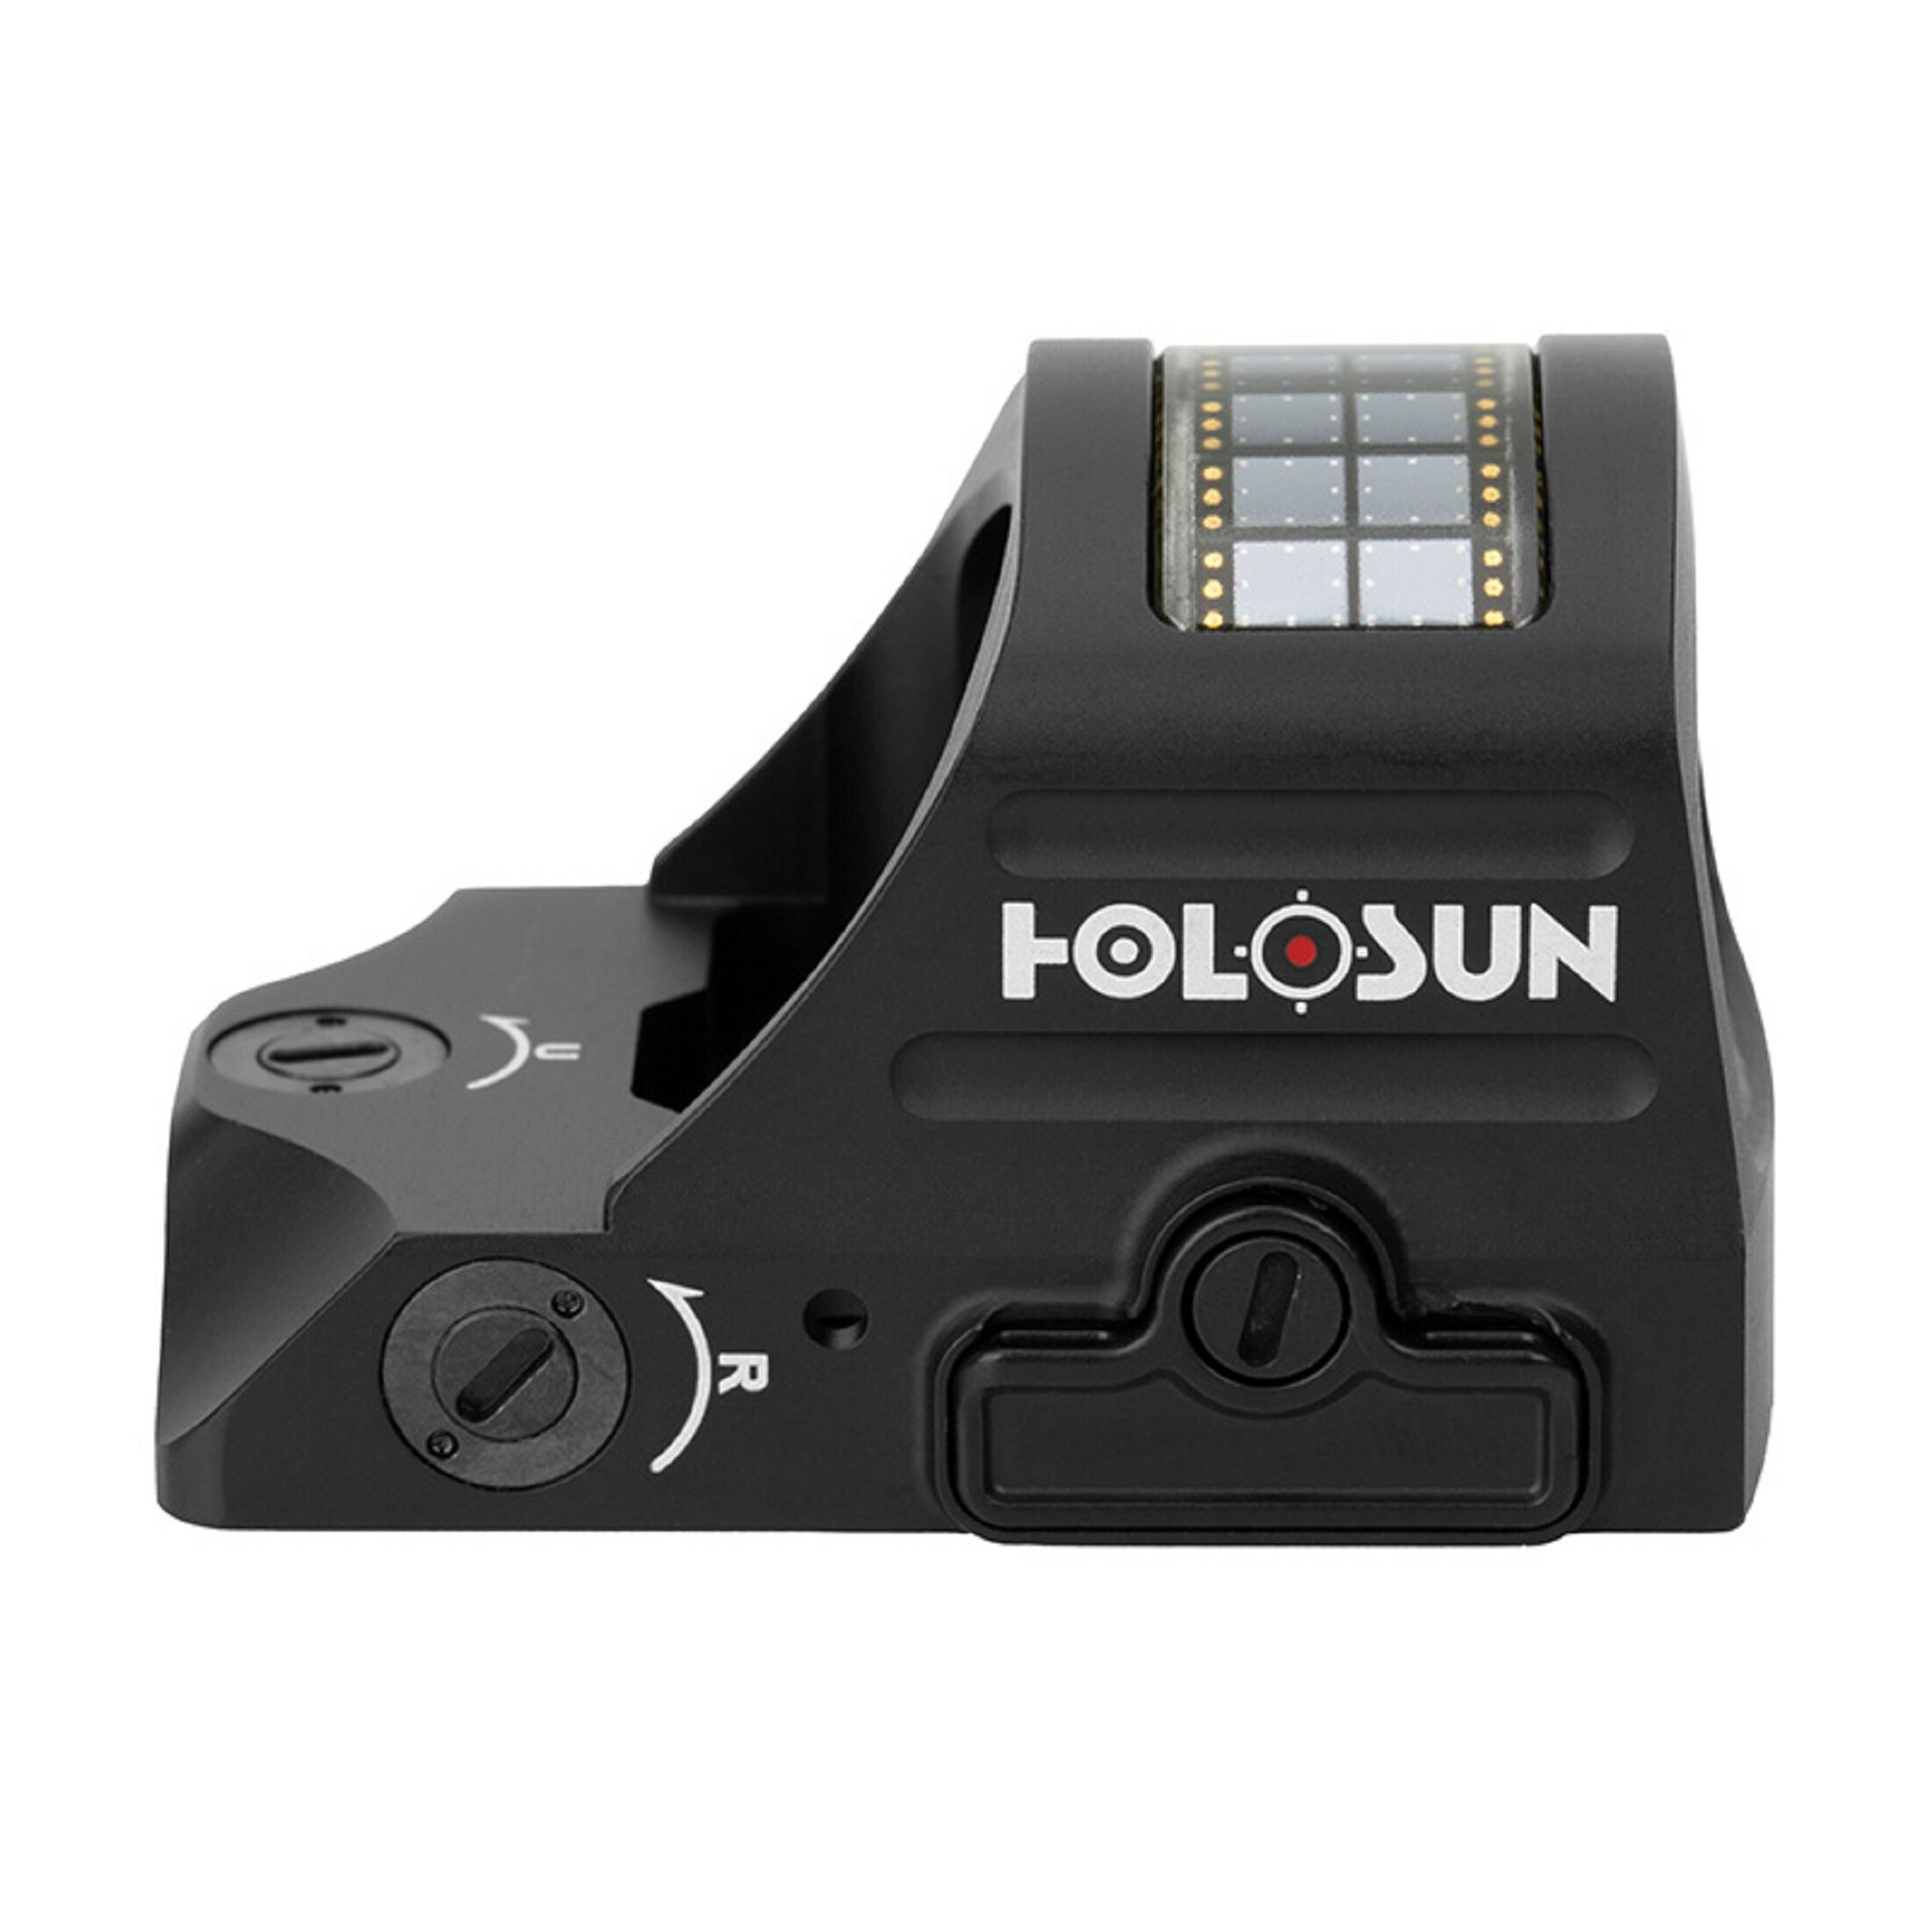 Holosun HS507C-X2 Micro visor réflex abierto (mini) con retícula roja presenta un sistema de múltip…